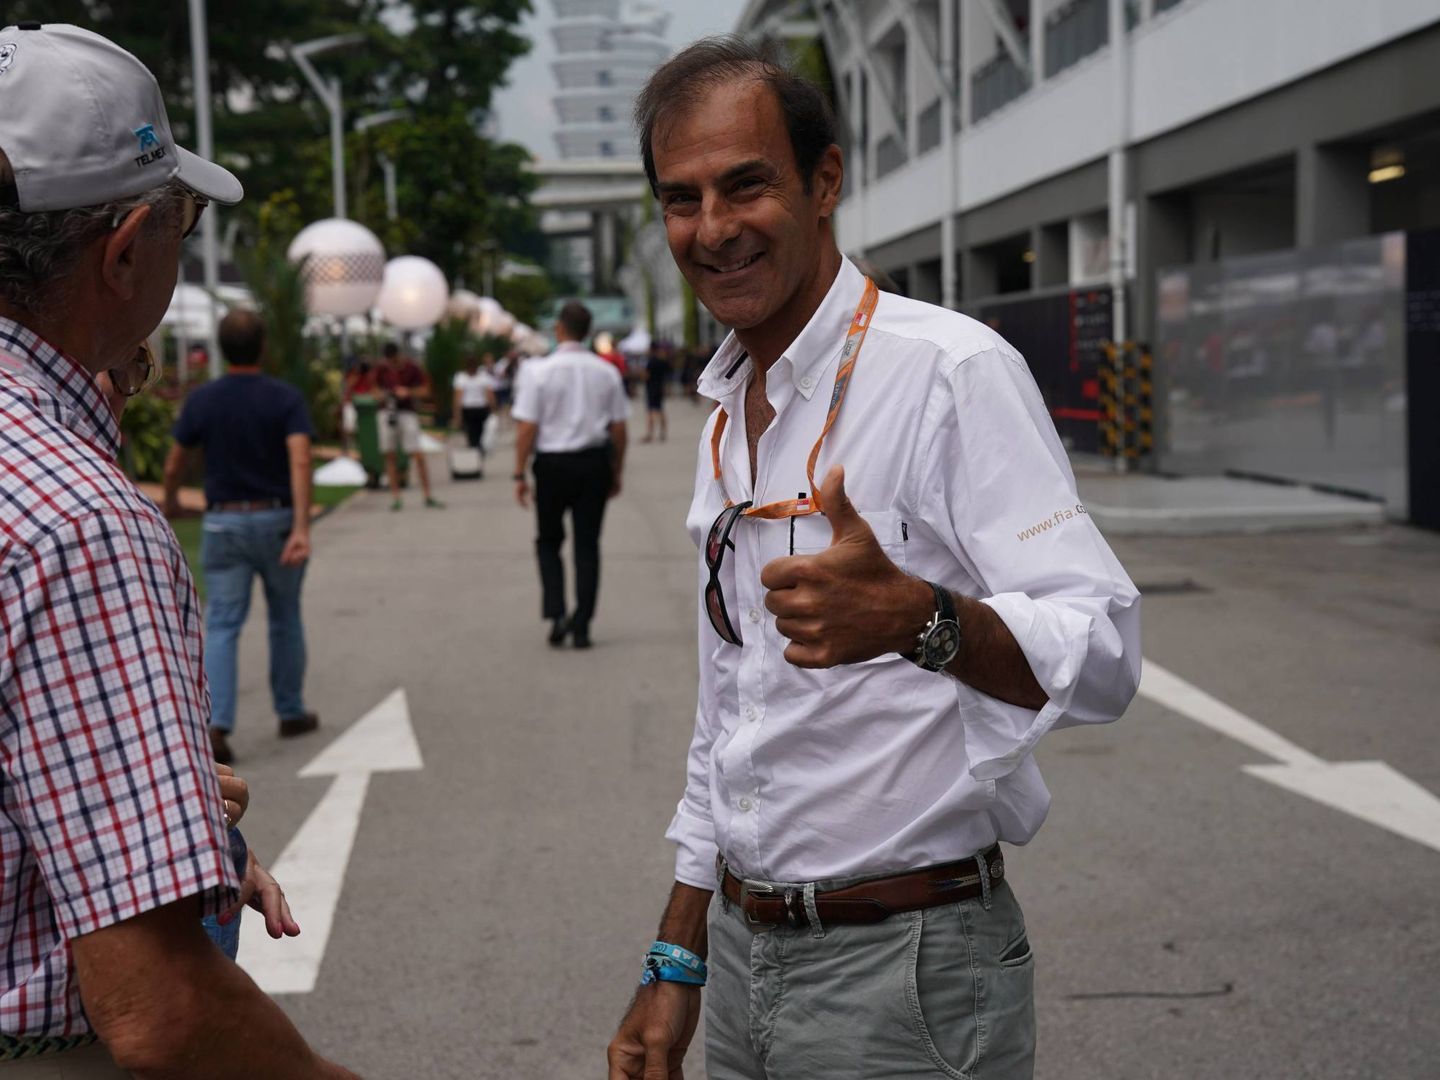 Emanuele Pirro es el expiloto de F1 que más veces ha ejercido de comisario en grandes premios. (Imago)